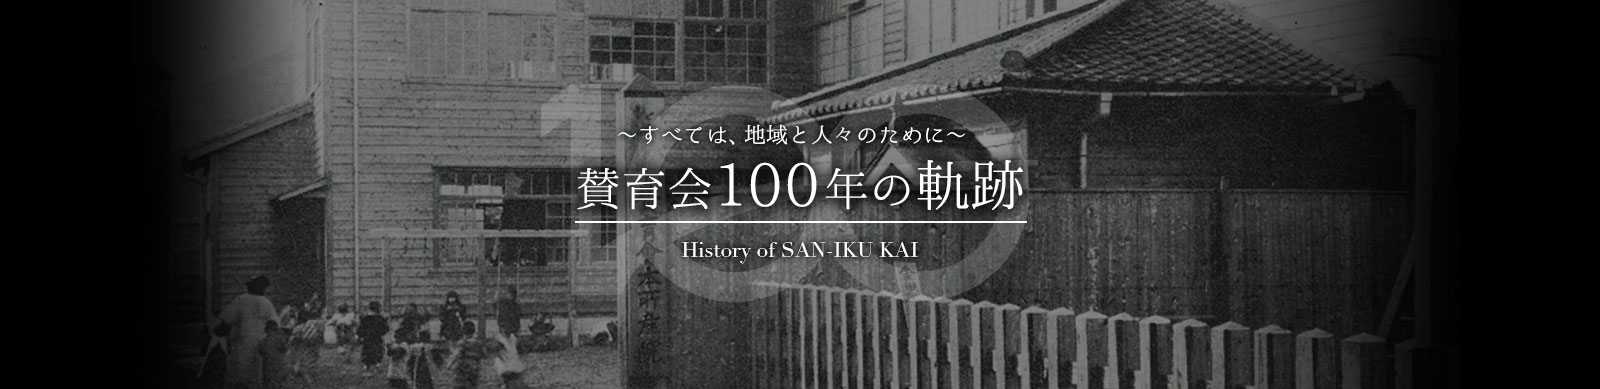 賛育会100年の軌跡 ～すべては、地域と人々のために～ History of SAN-IKUKAI